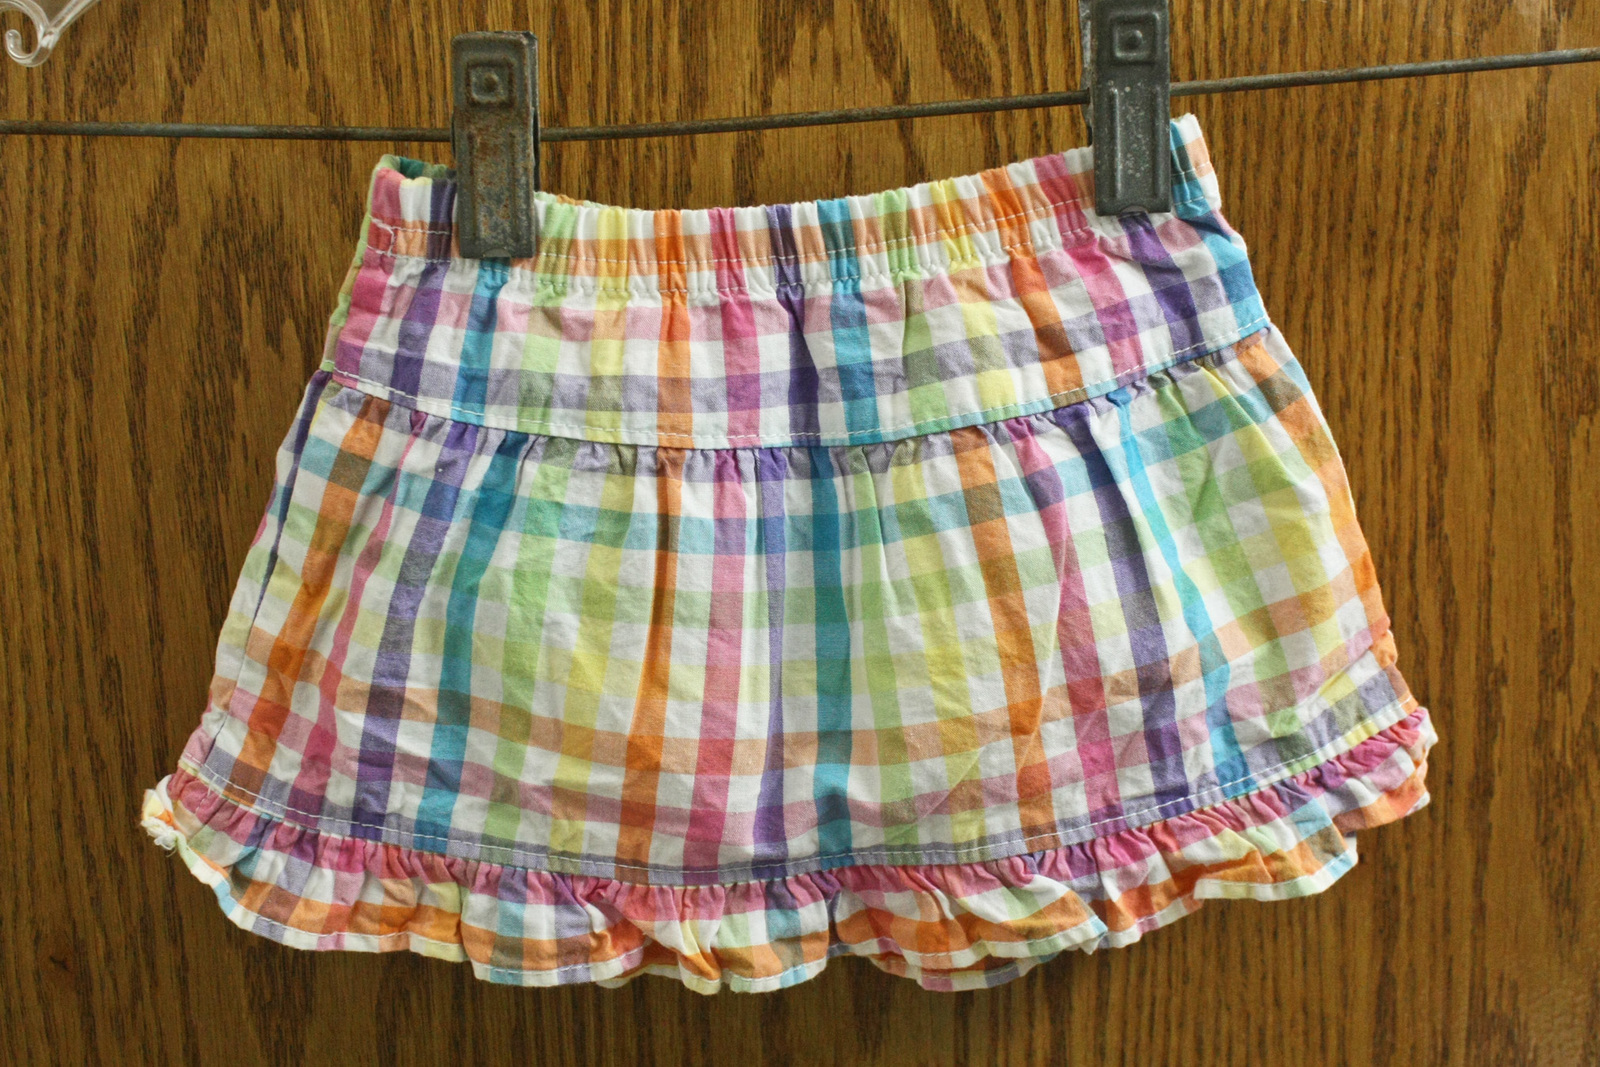 Garanimals Rainbow Plaid Skirt - size Girls 0-3 Months - $7.99